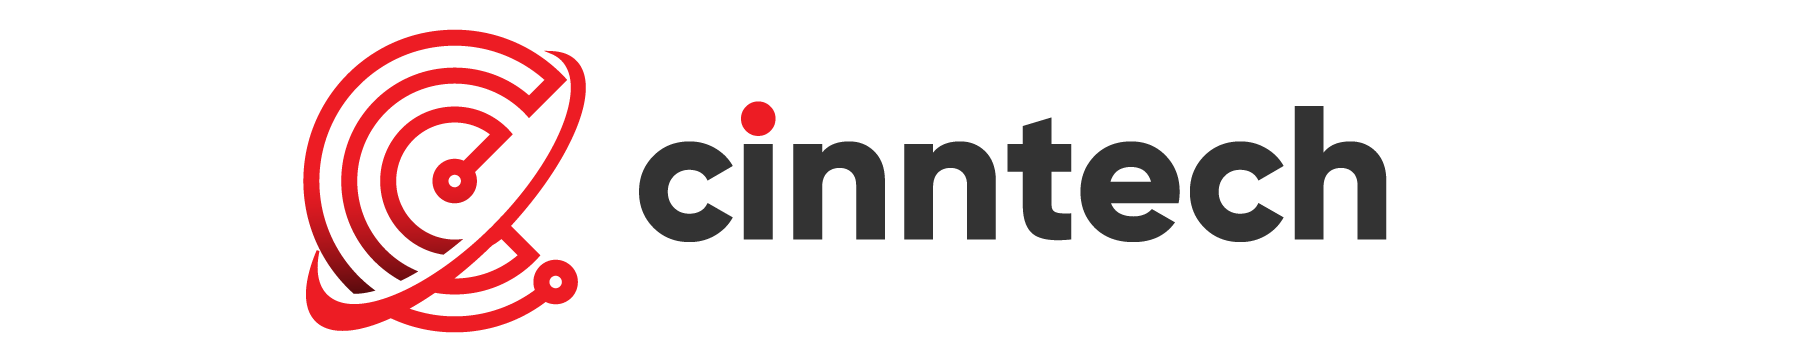 cinntech logo